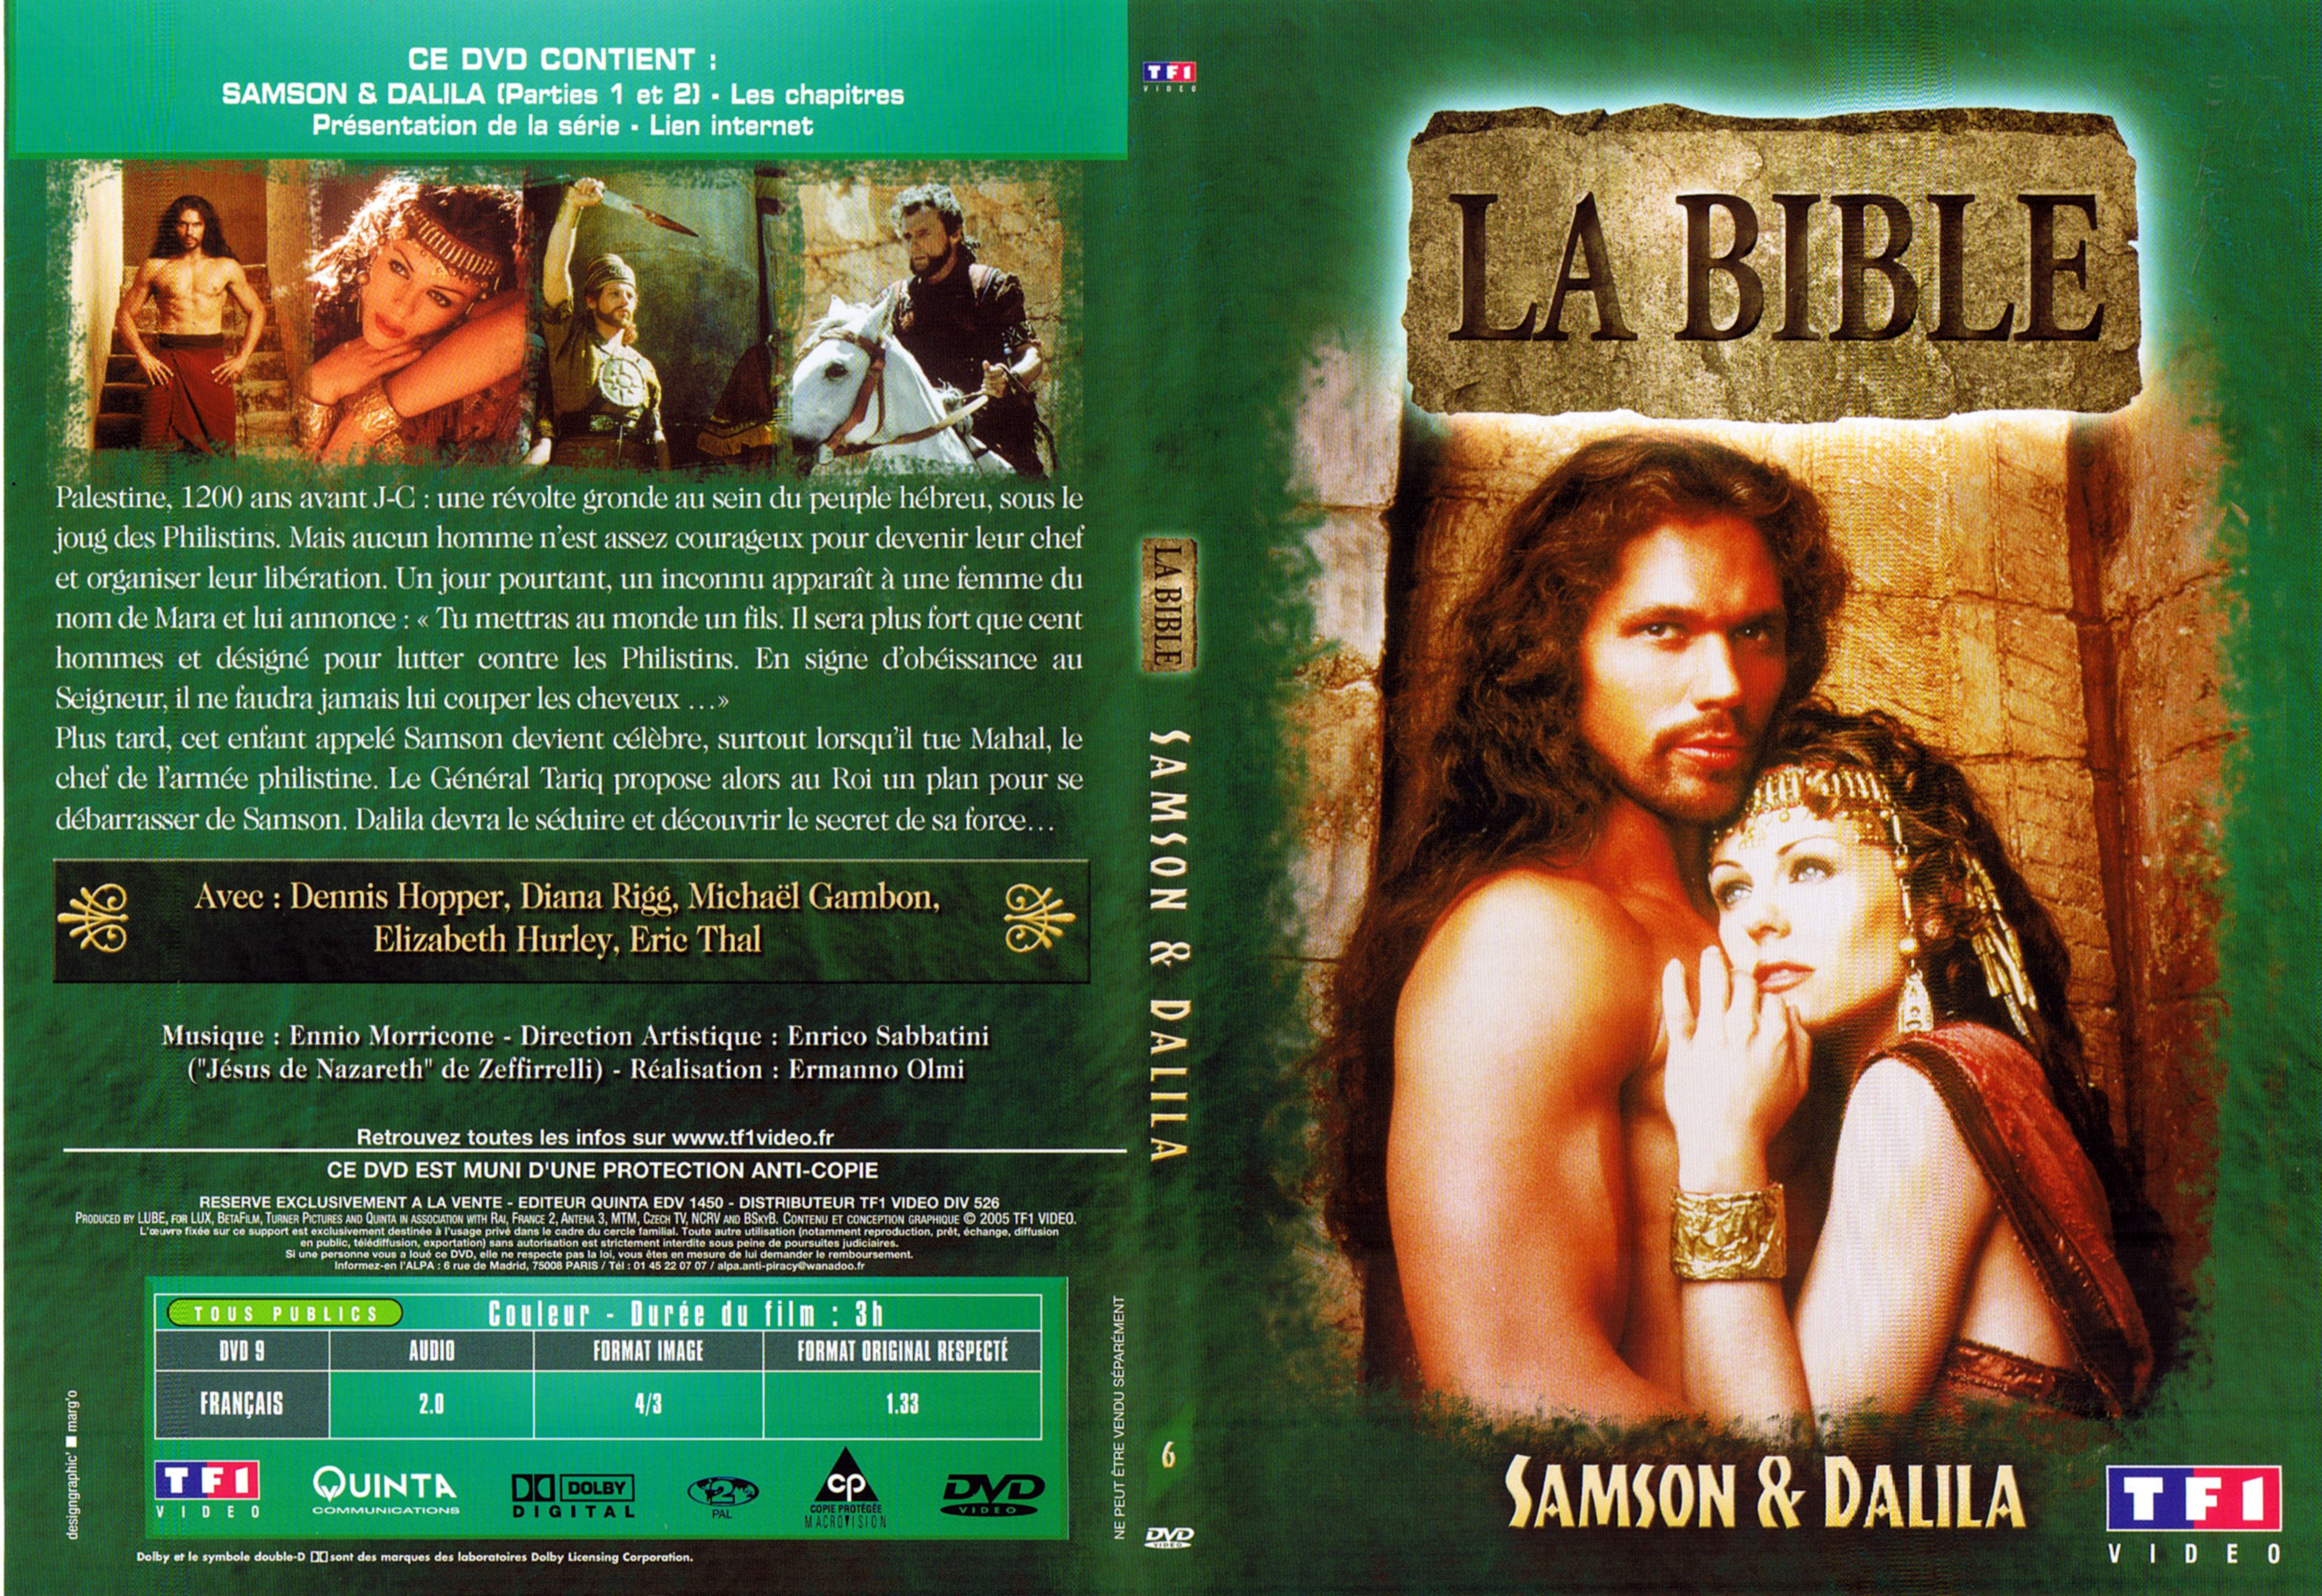 Jaquette DVD La bible - Samson et Dalila